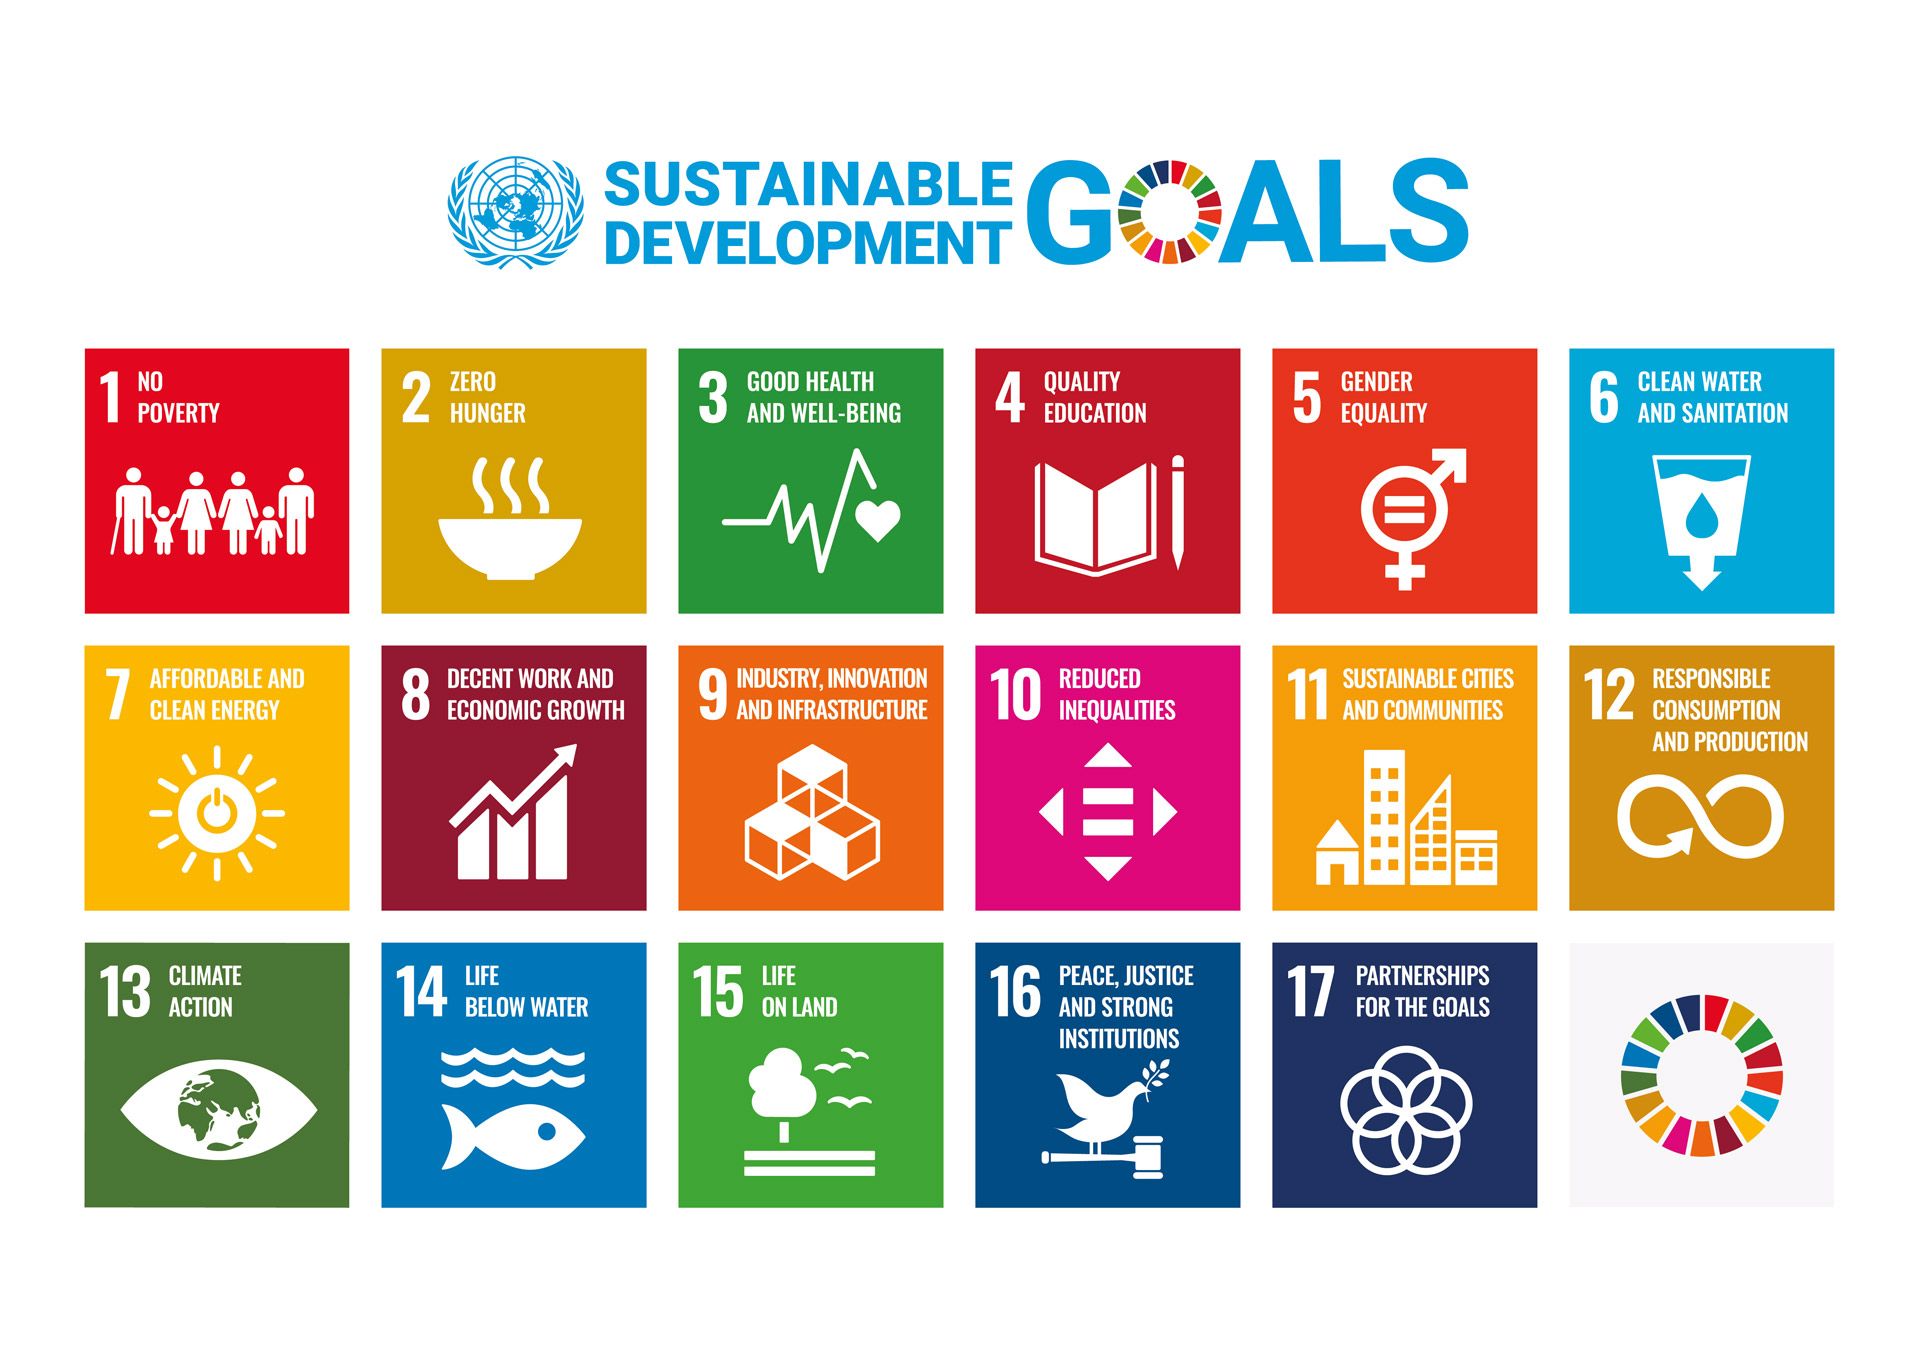 UN-Emblem und Text “Sustainable Development Goals” über einer Grafik mit den 17 farbigen Icons der SDG-Nachhaltigkeitsziele.